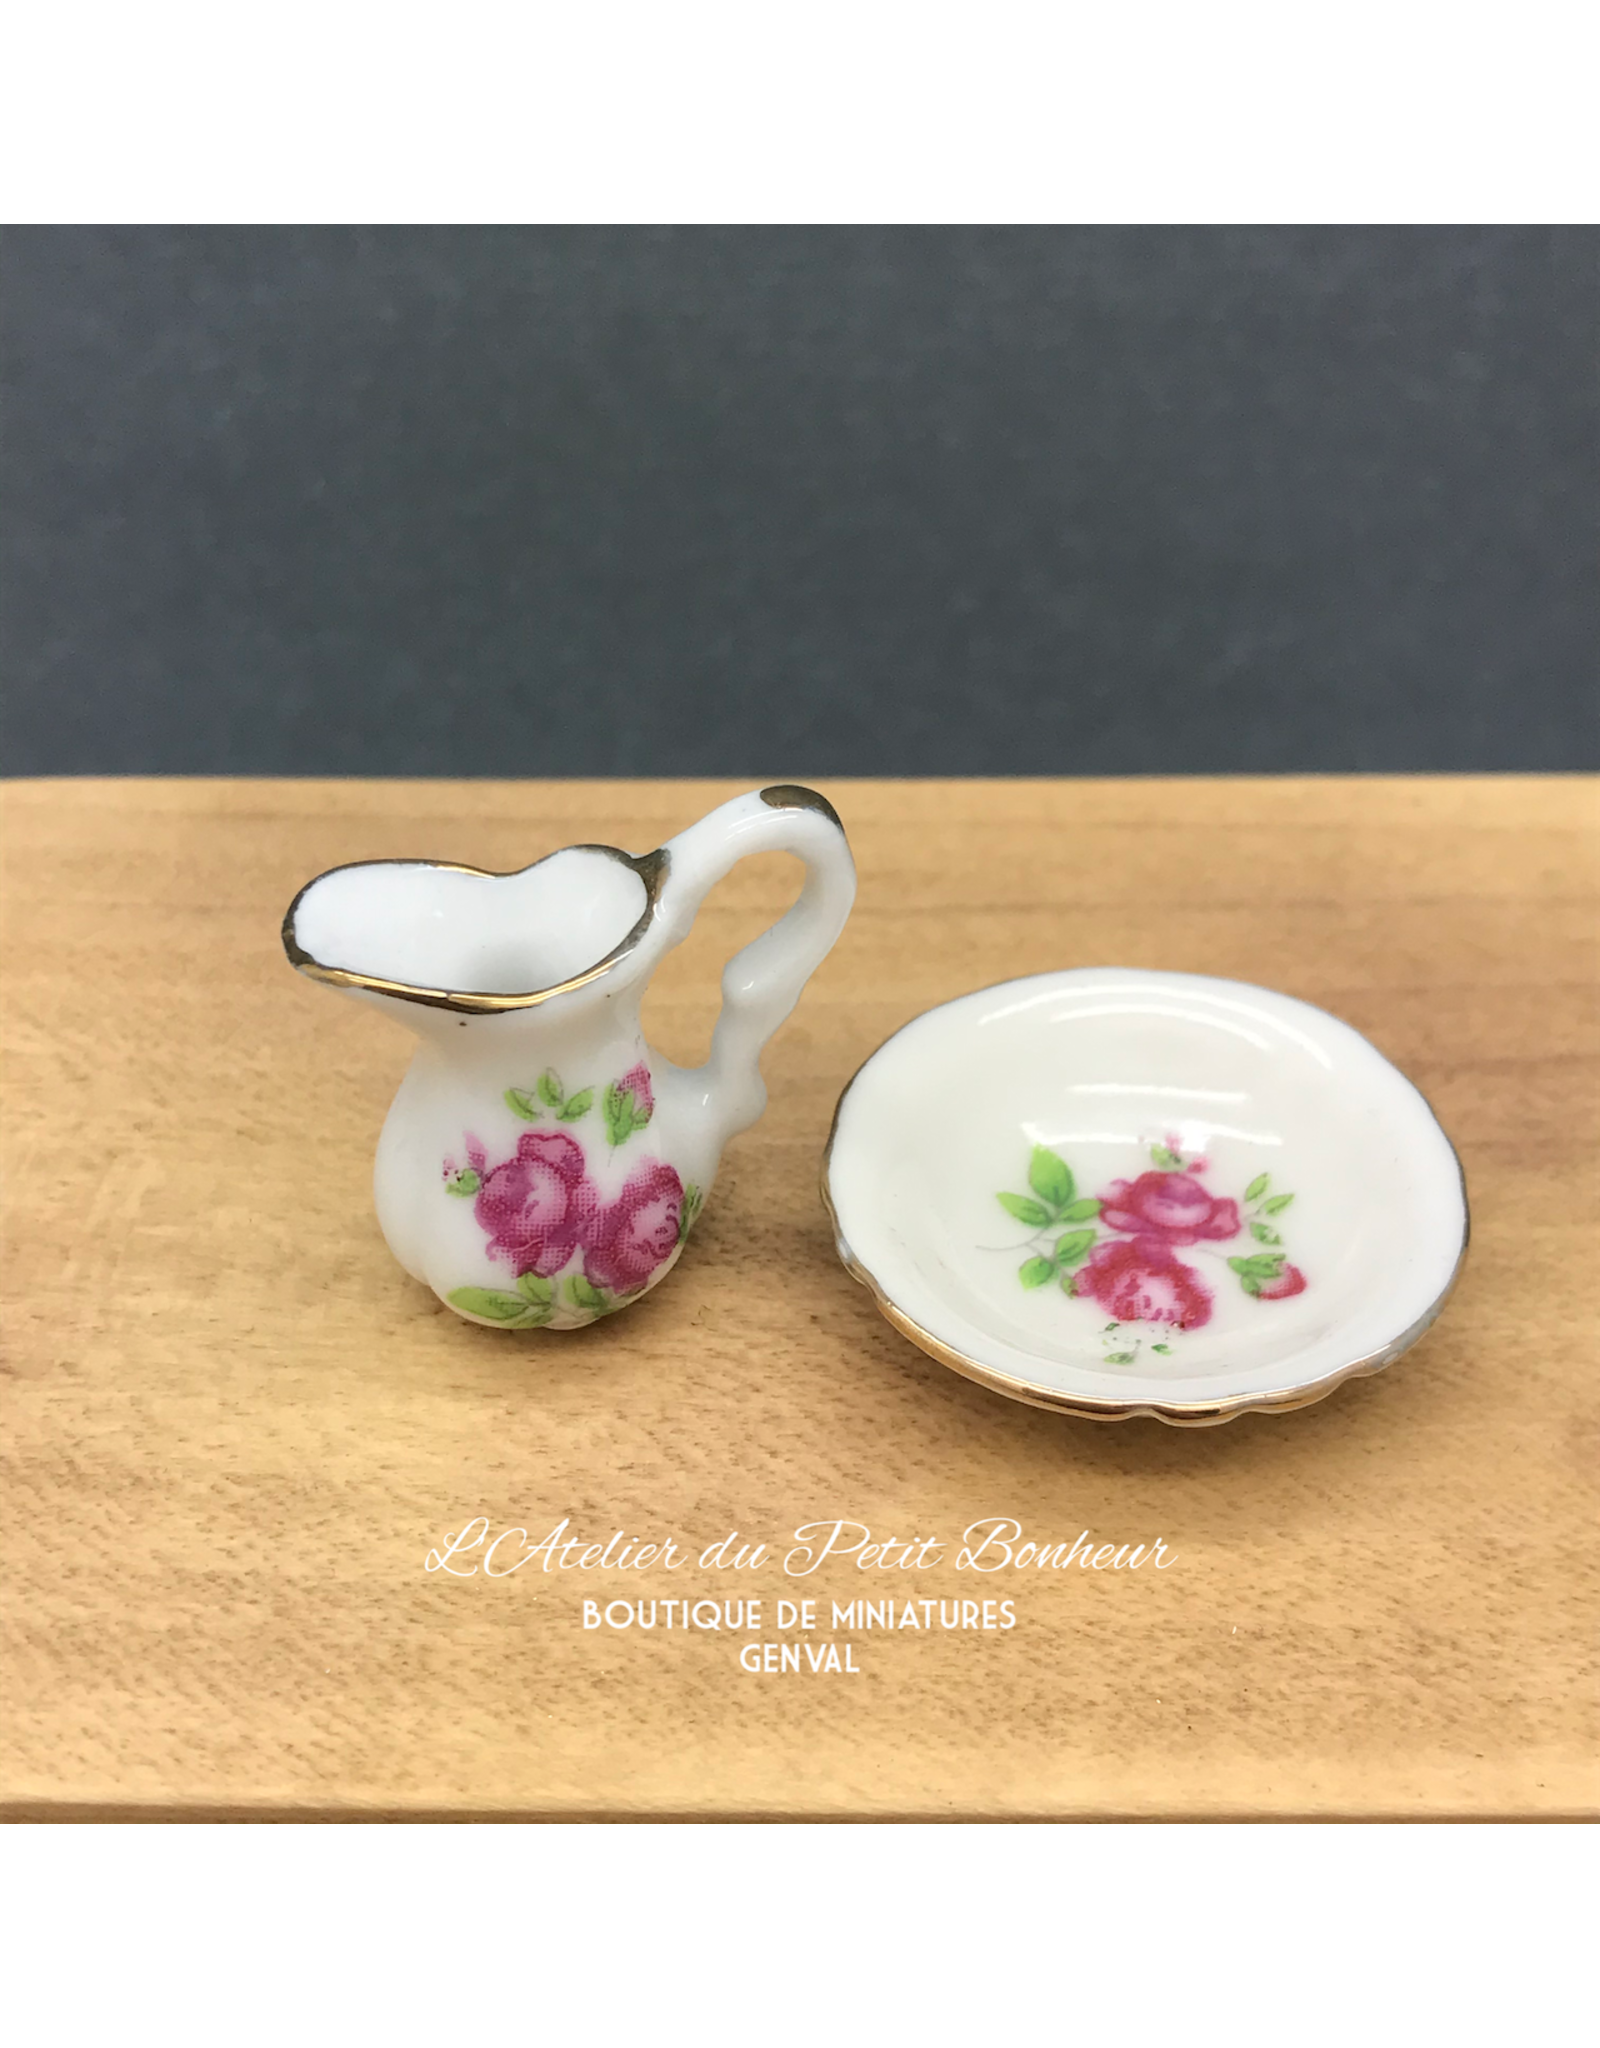 Broc & vasque fleuris roses miniatures 1:12, porcelaine